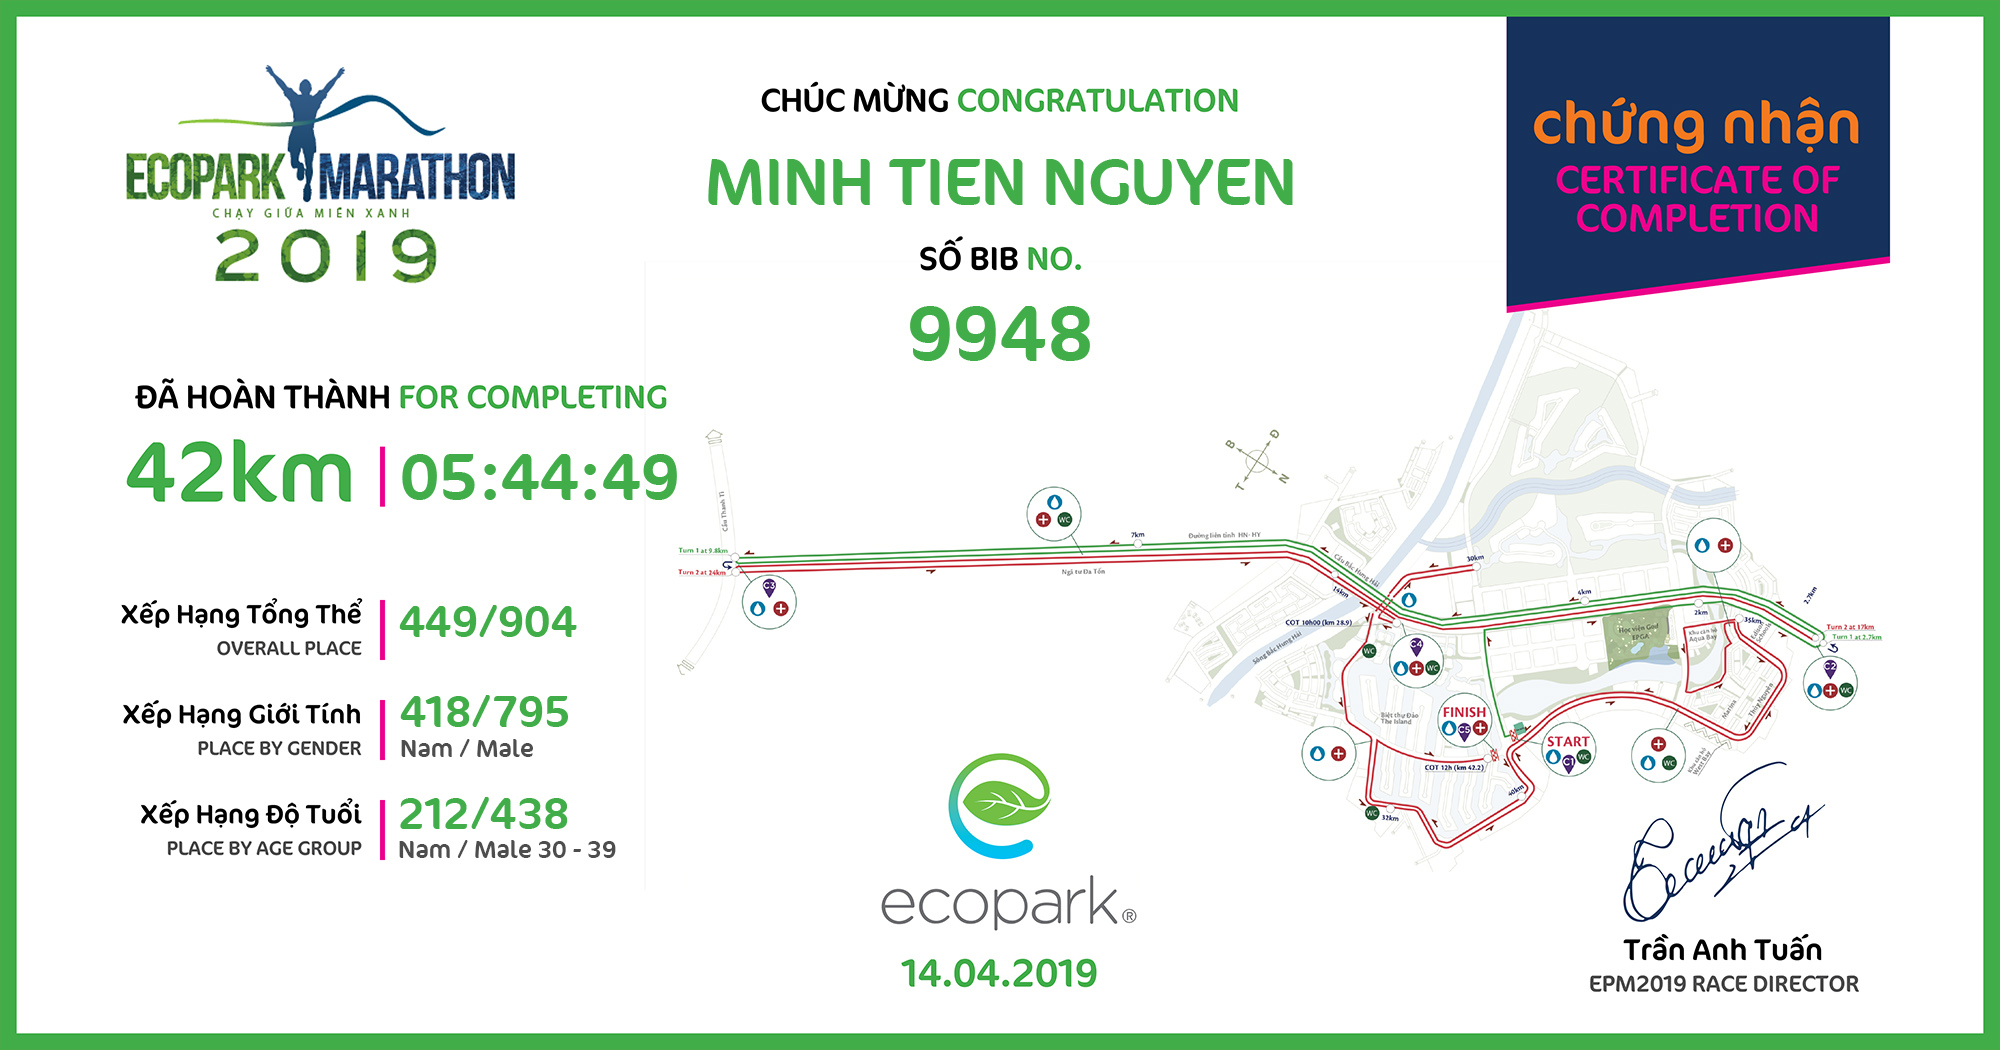 9948 - Minh Tien Nguyen